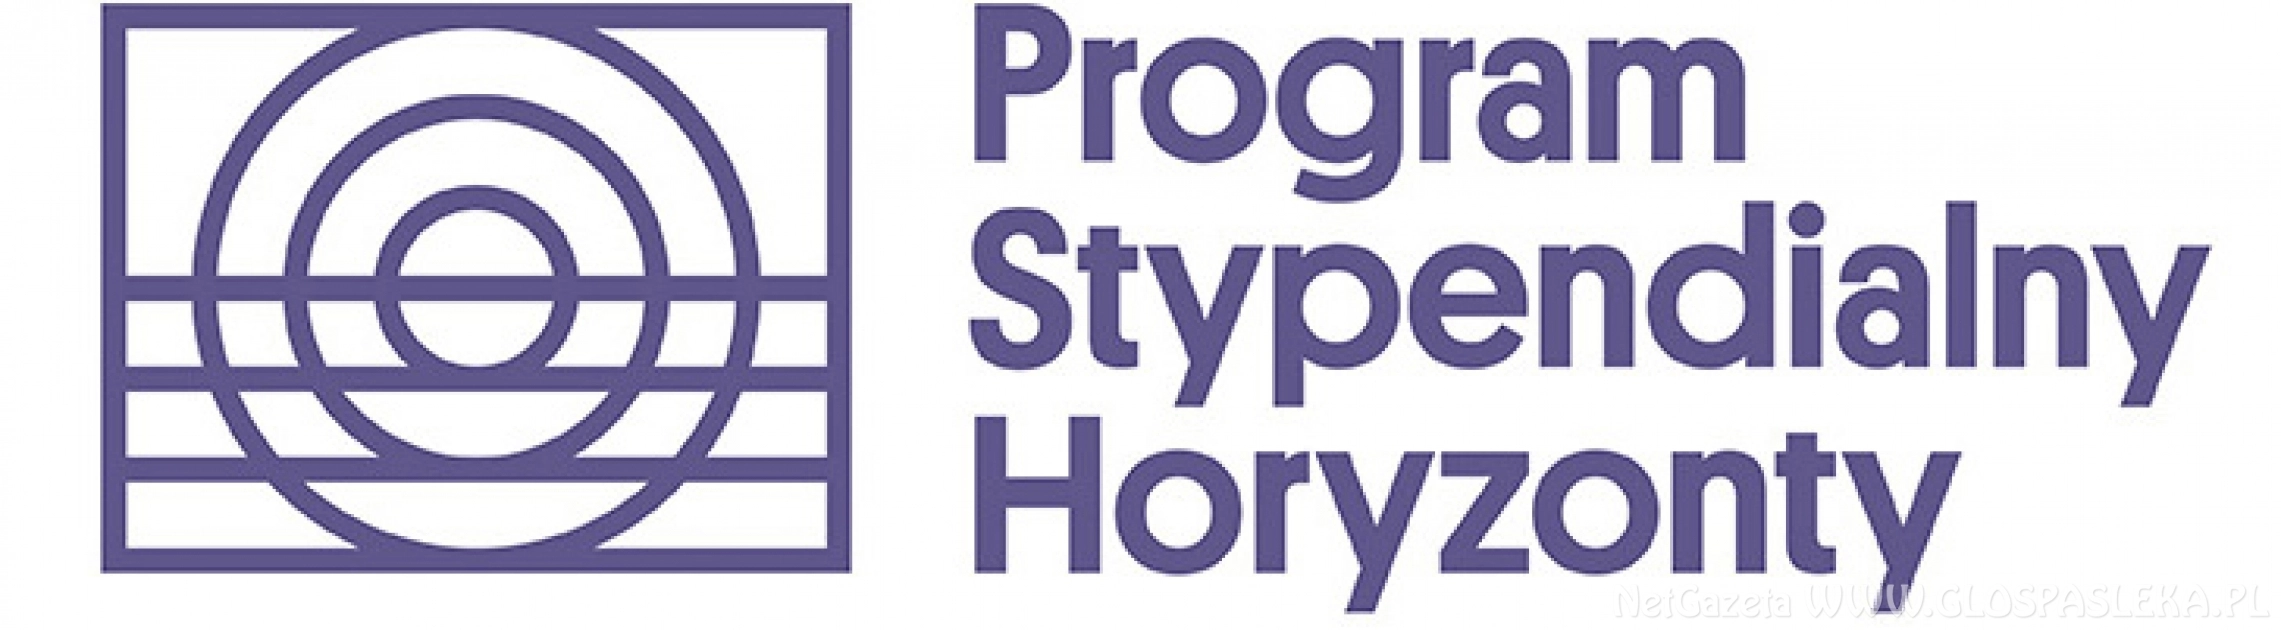 Program stypendialny Horyzonty